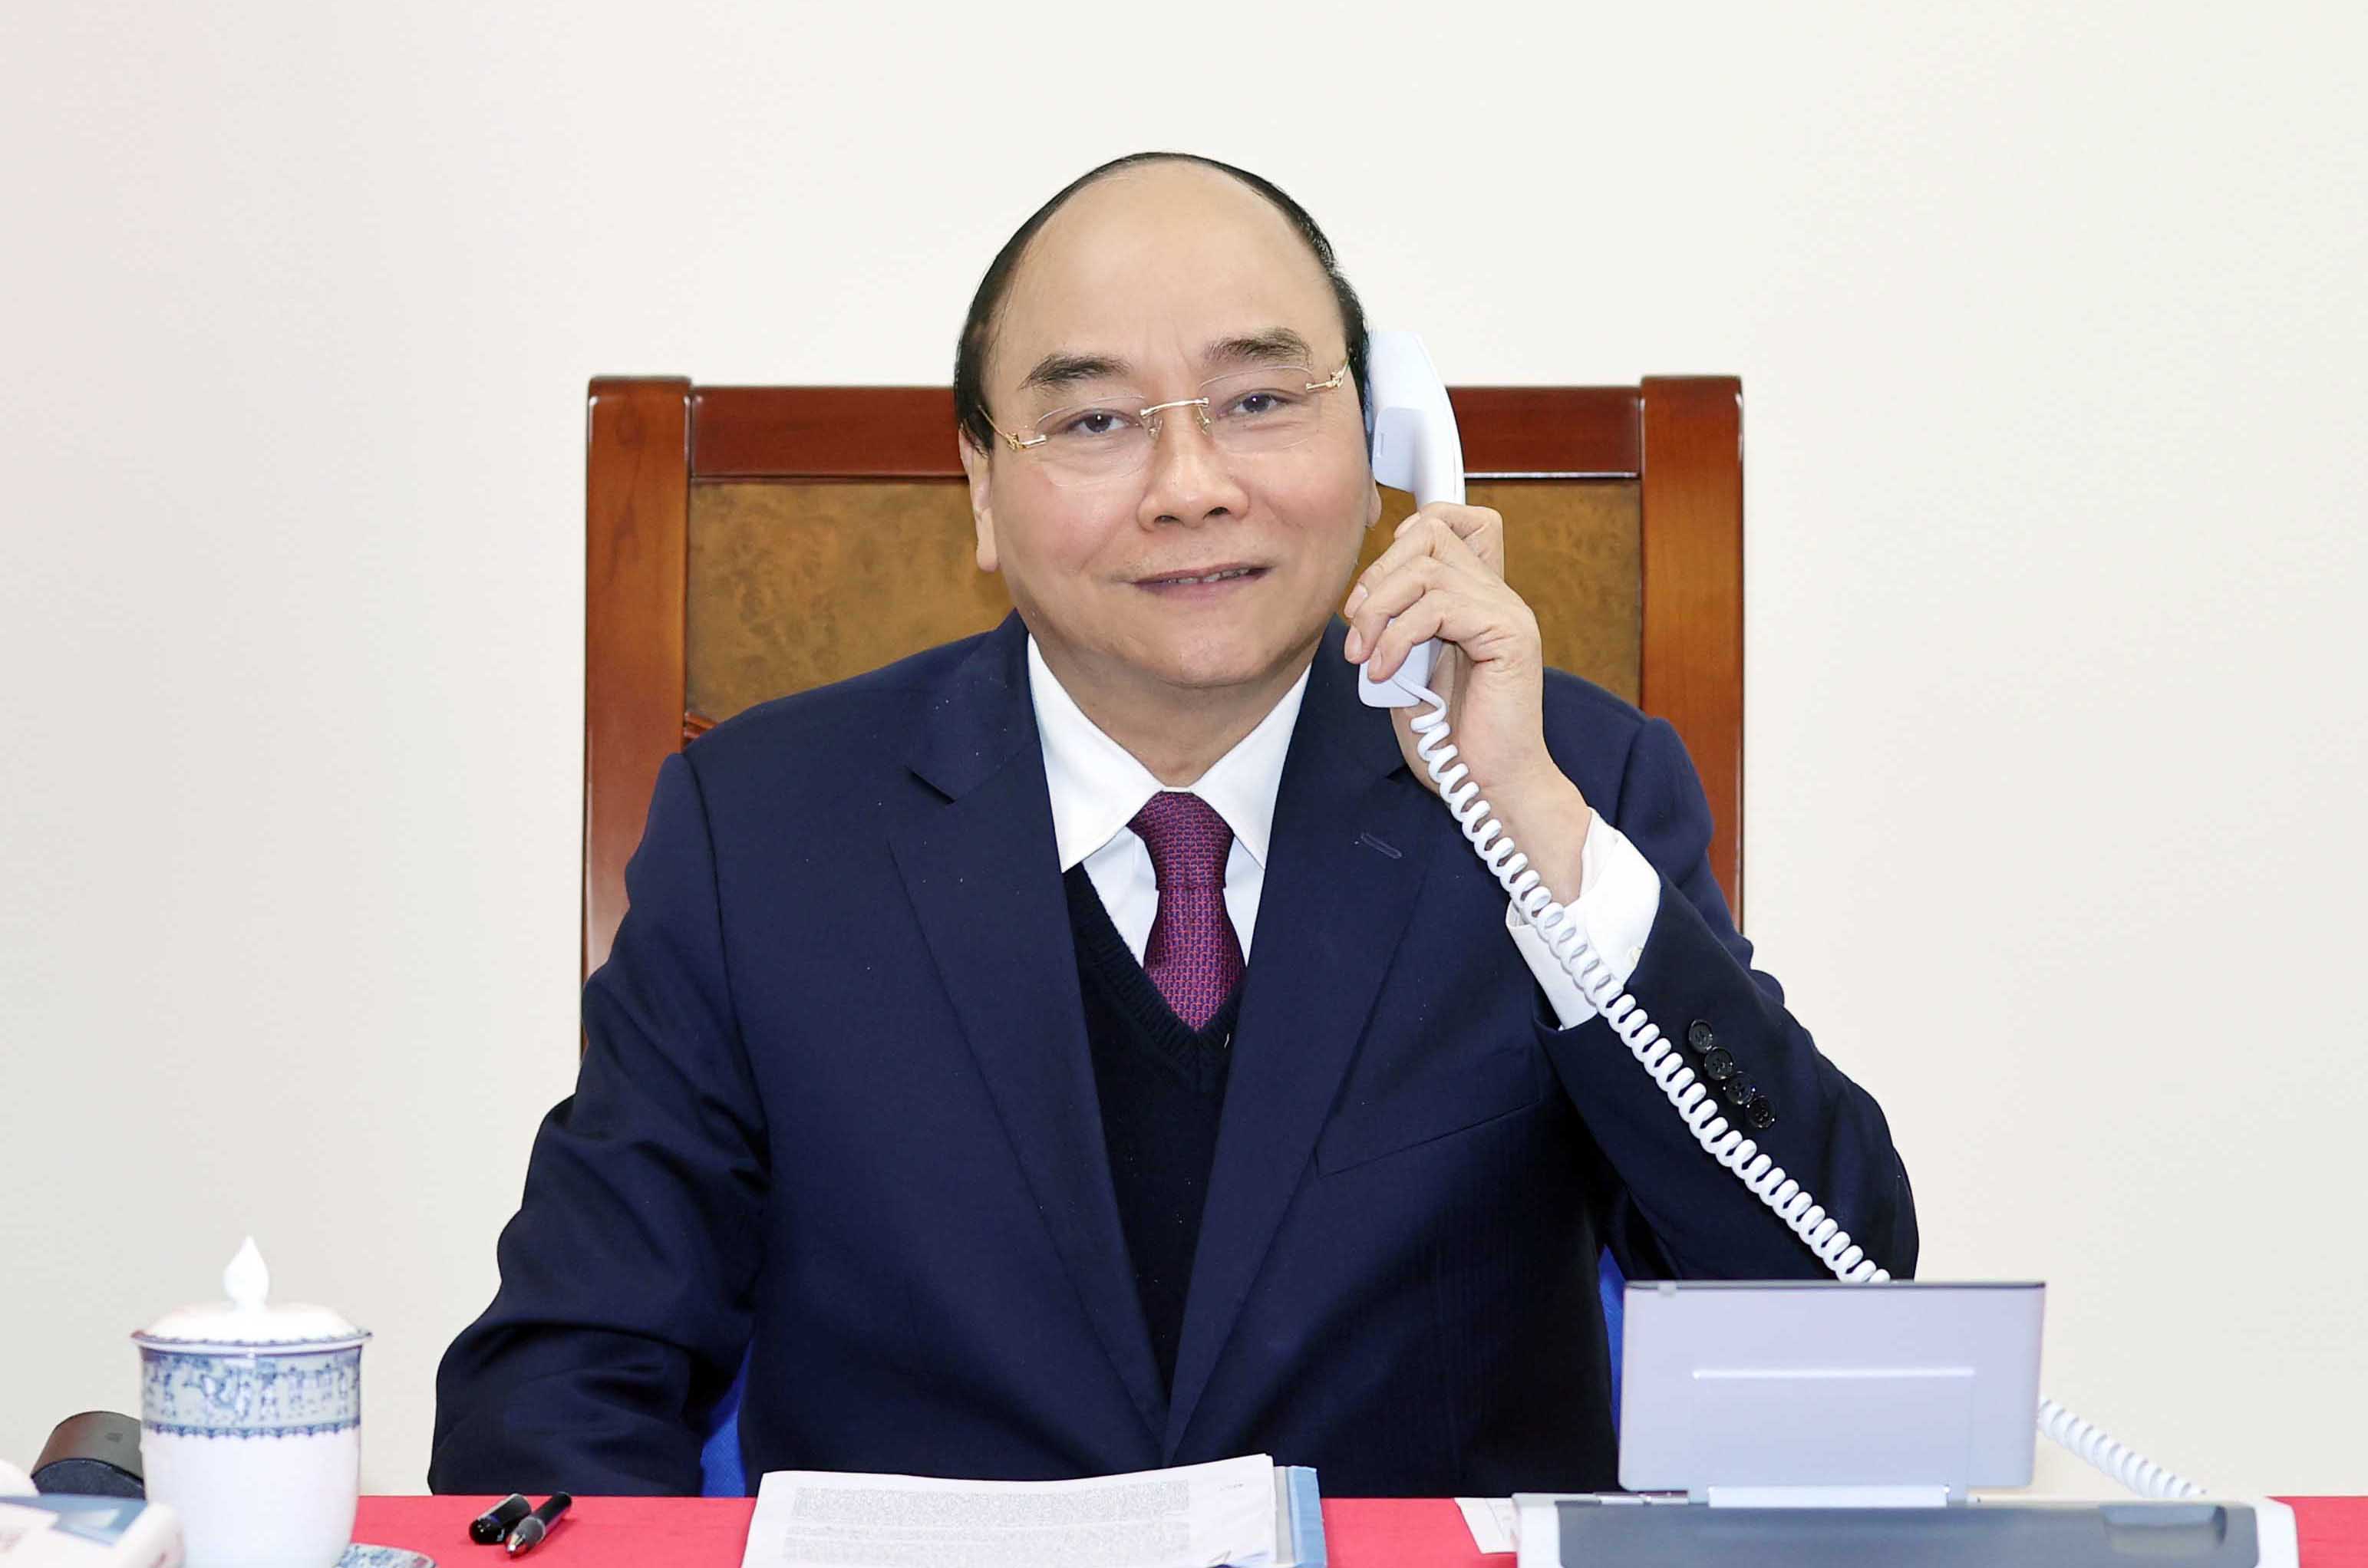 Thủ tướng Nguyễn Xuân Phúc điện đàm với Tổng thống Donald Trump, trao đổi về chính sách tiền tệ